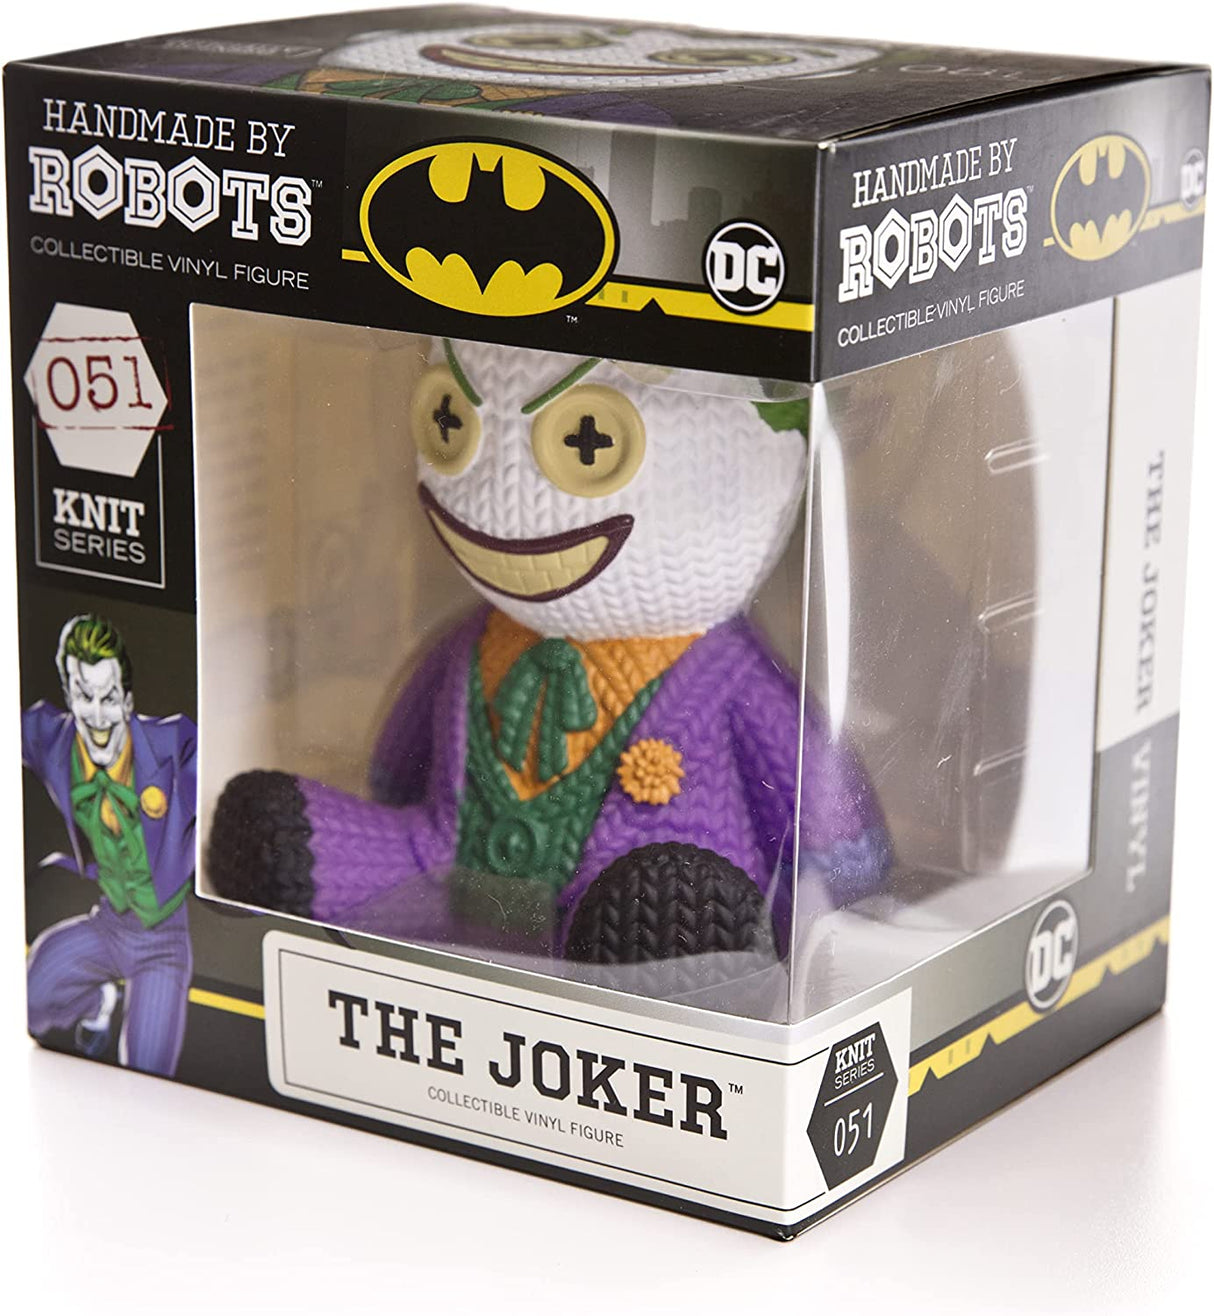 Handmade by Robots | DC Joker Vinyl Figure | Knit Series #051